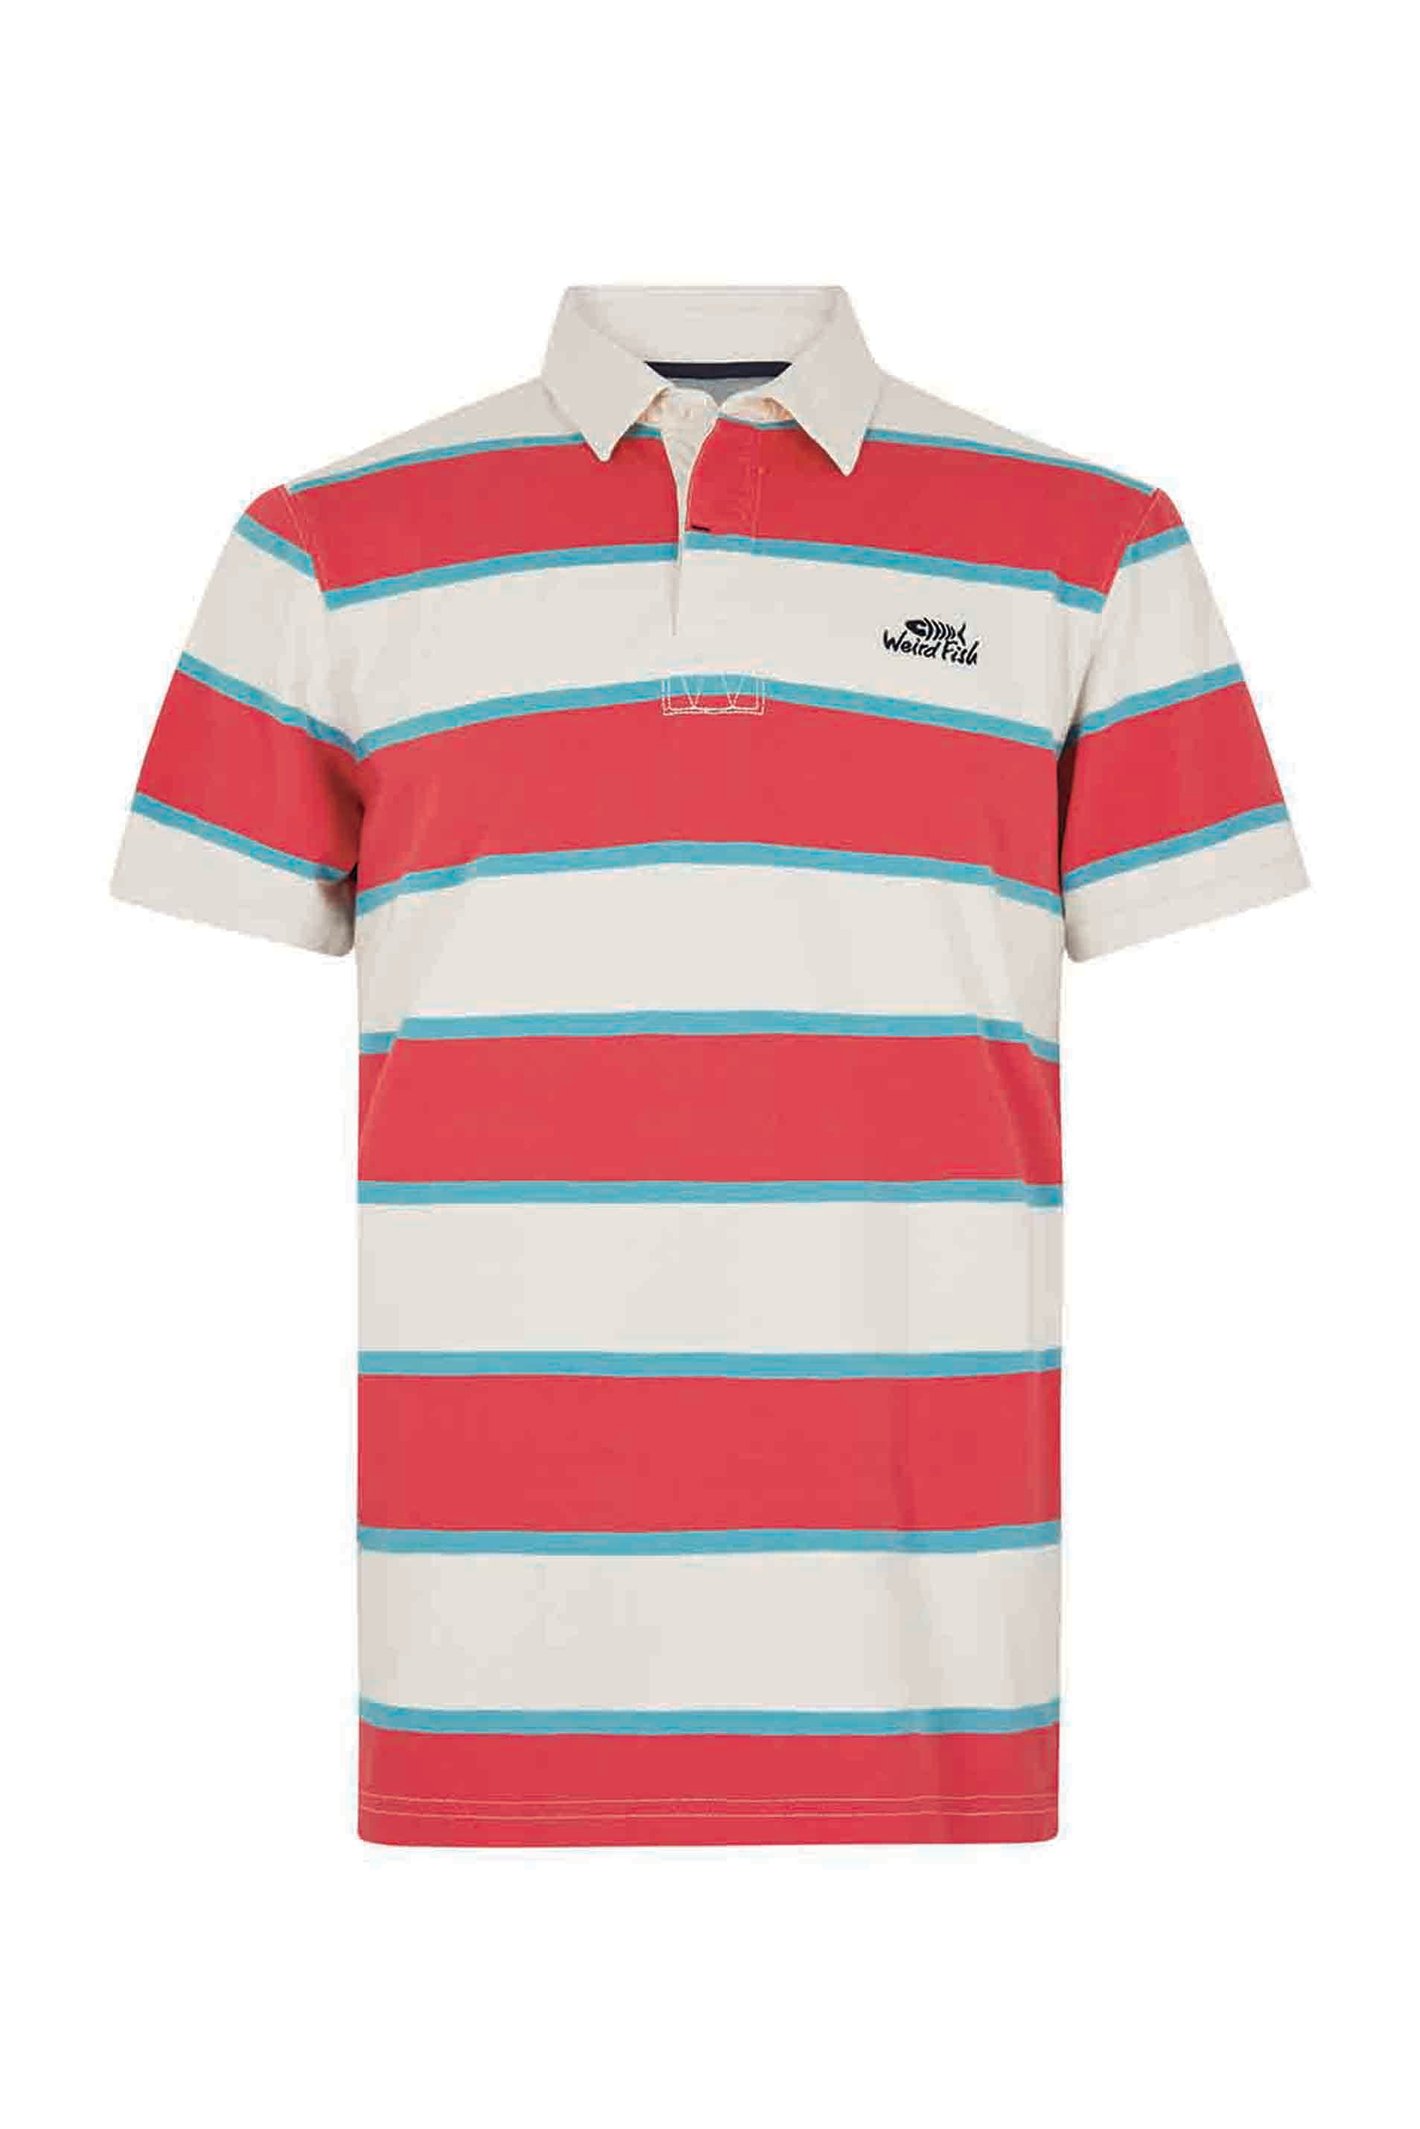 Weird Fish Rossett Organic Cotton Short Sleeve Rugby Shirt Radical Red Size XL